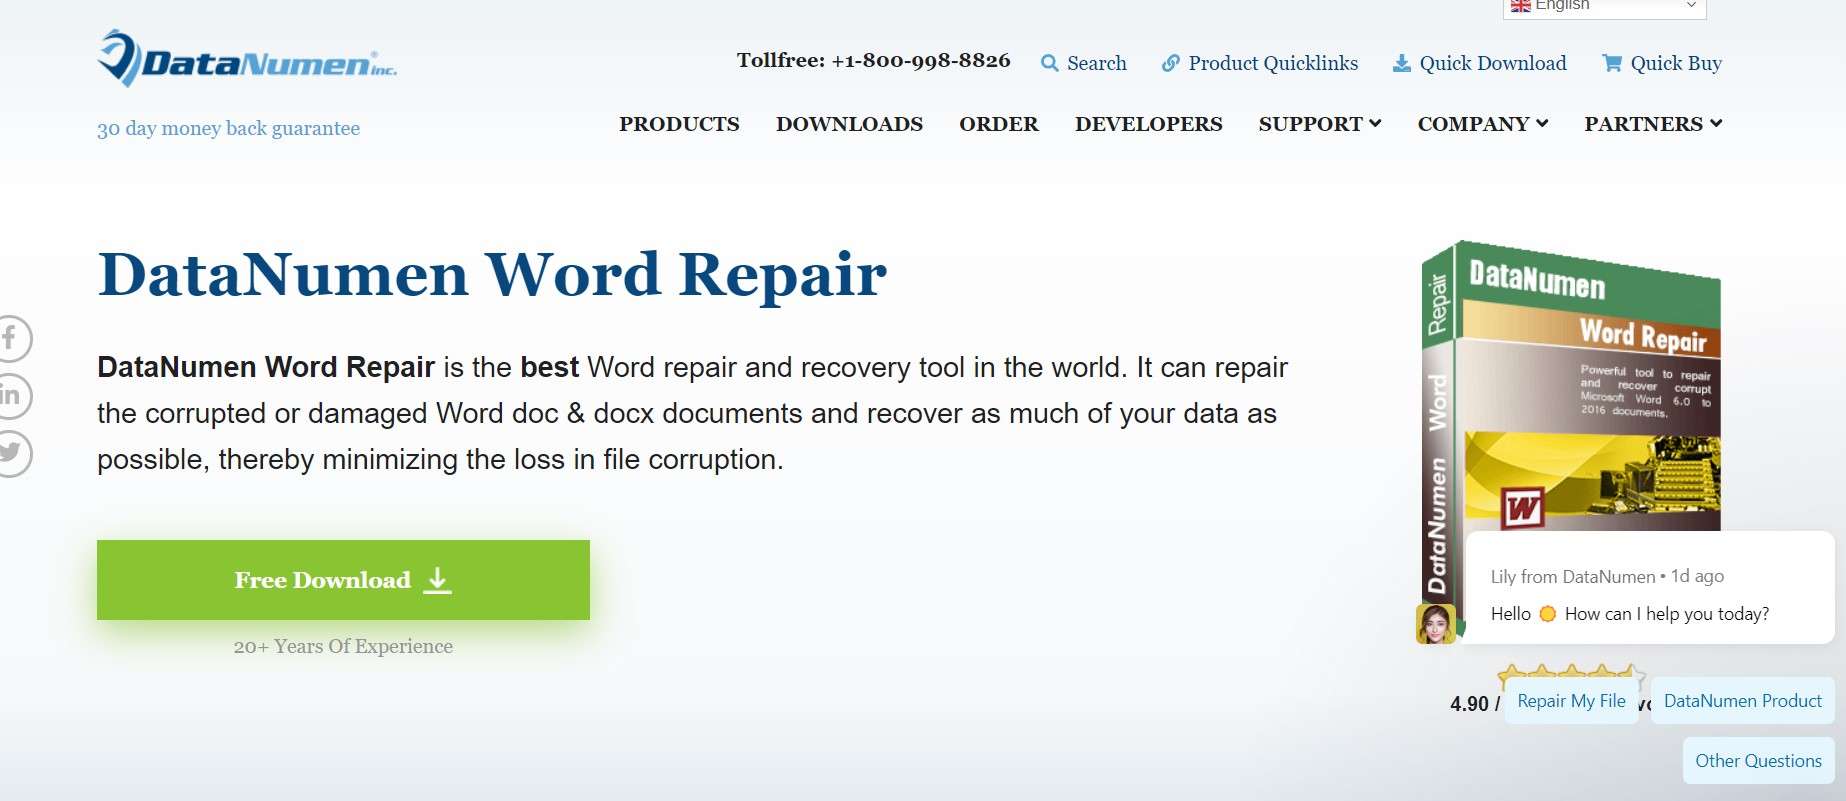 datanumen word repair